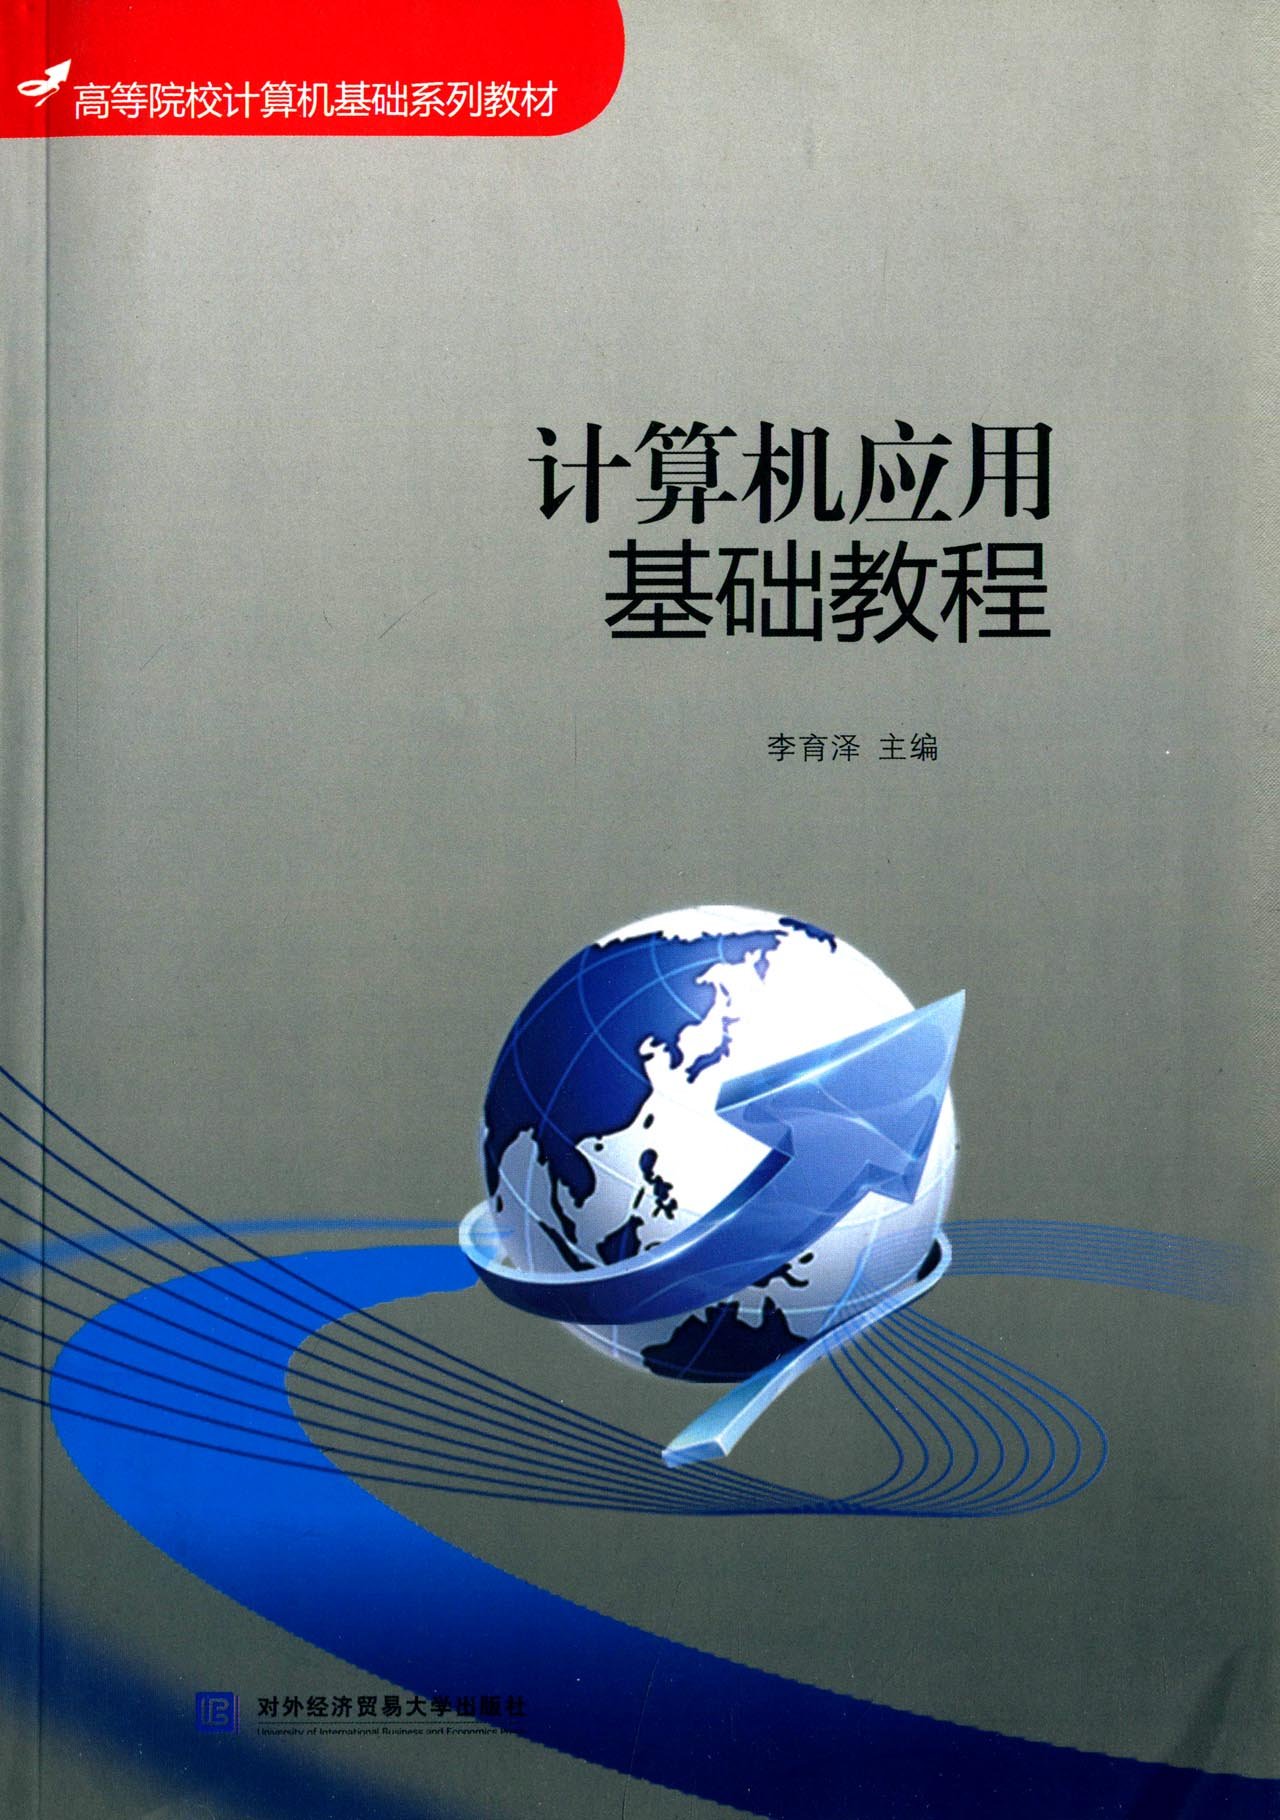 計算機套用基礎教程(對外經濟貿易大學出版社出版書籍)